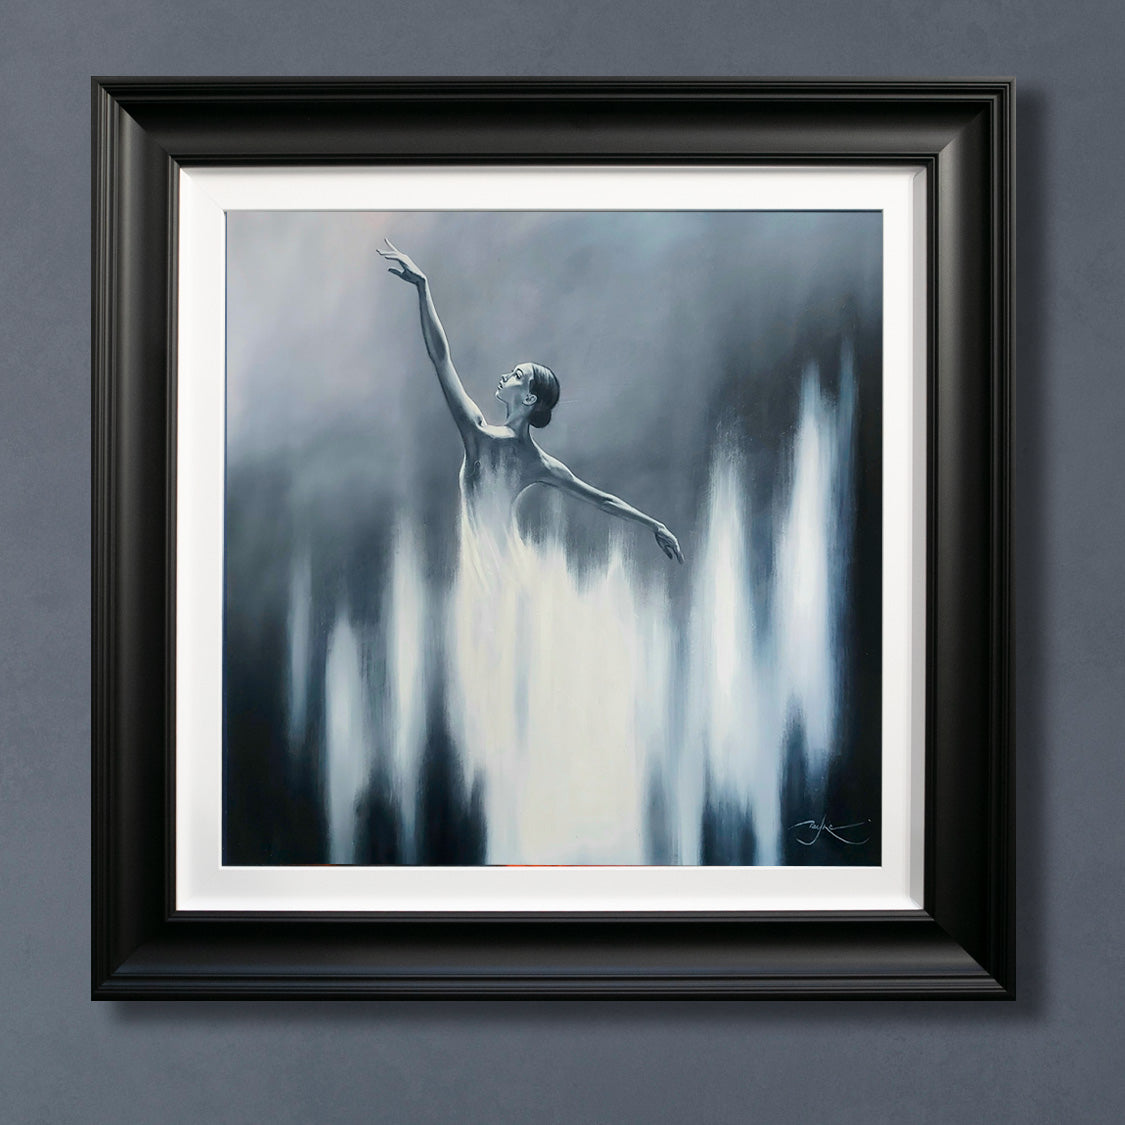 Ben Payne - 'White Dancer' - Framed Limited Edition